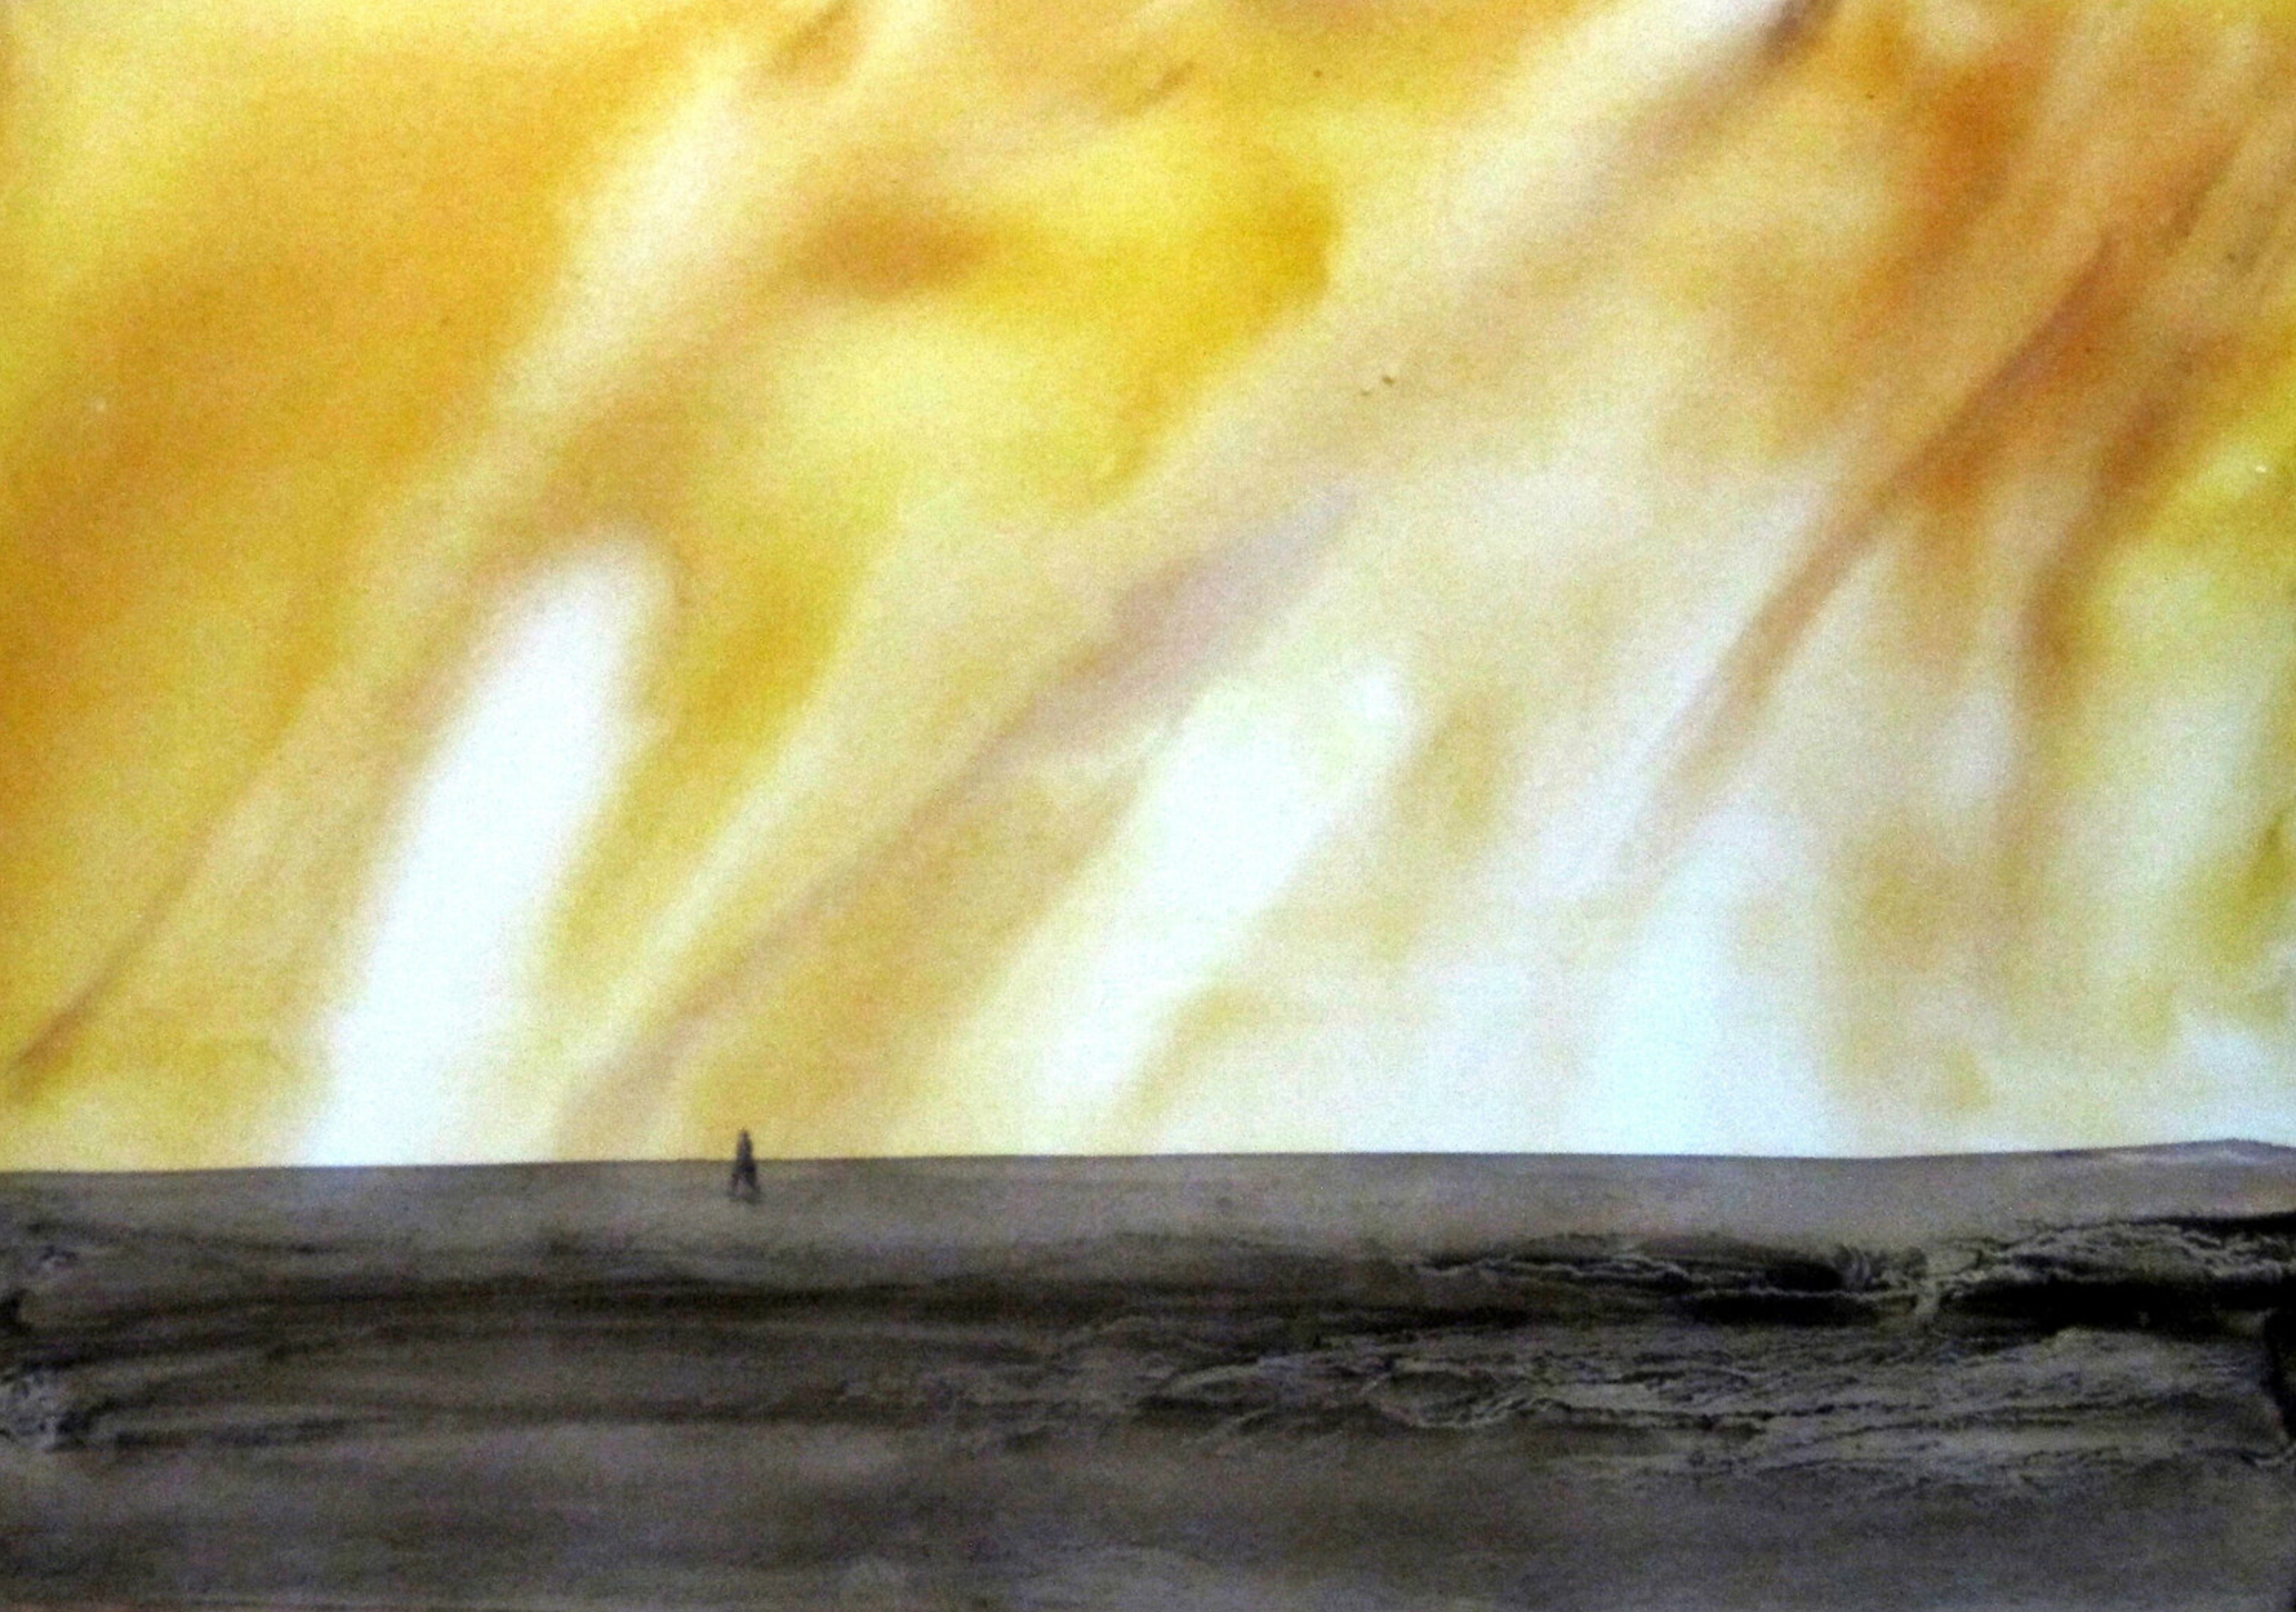 Sylvia Baldeva's "Chemin aride" zeigt ein Aquarell gemaltes Landschaftsgemälde. Landschaft, Himmel und Erde, Licht, Wärme, Silhouette, Symbolik. Aquarell auf Canson®-Papier. Farbe Gelb, Grau, Schwarz.